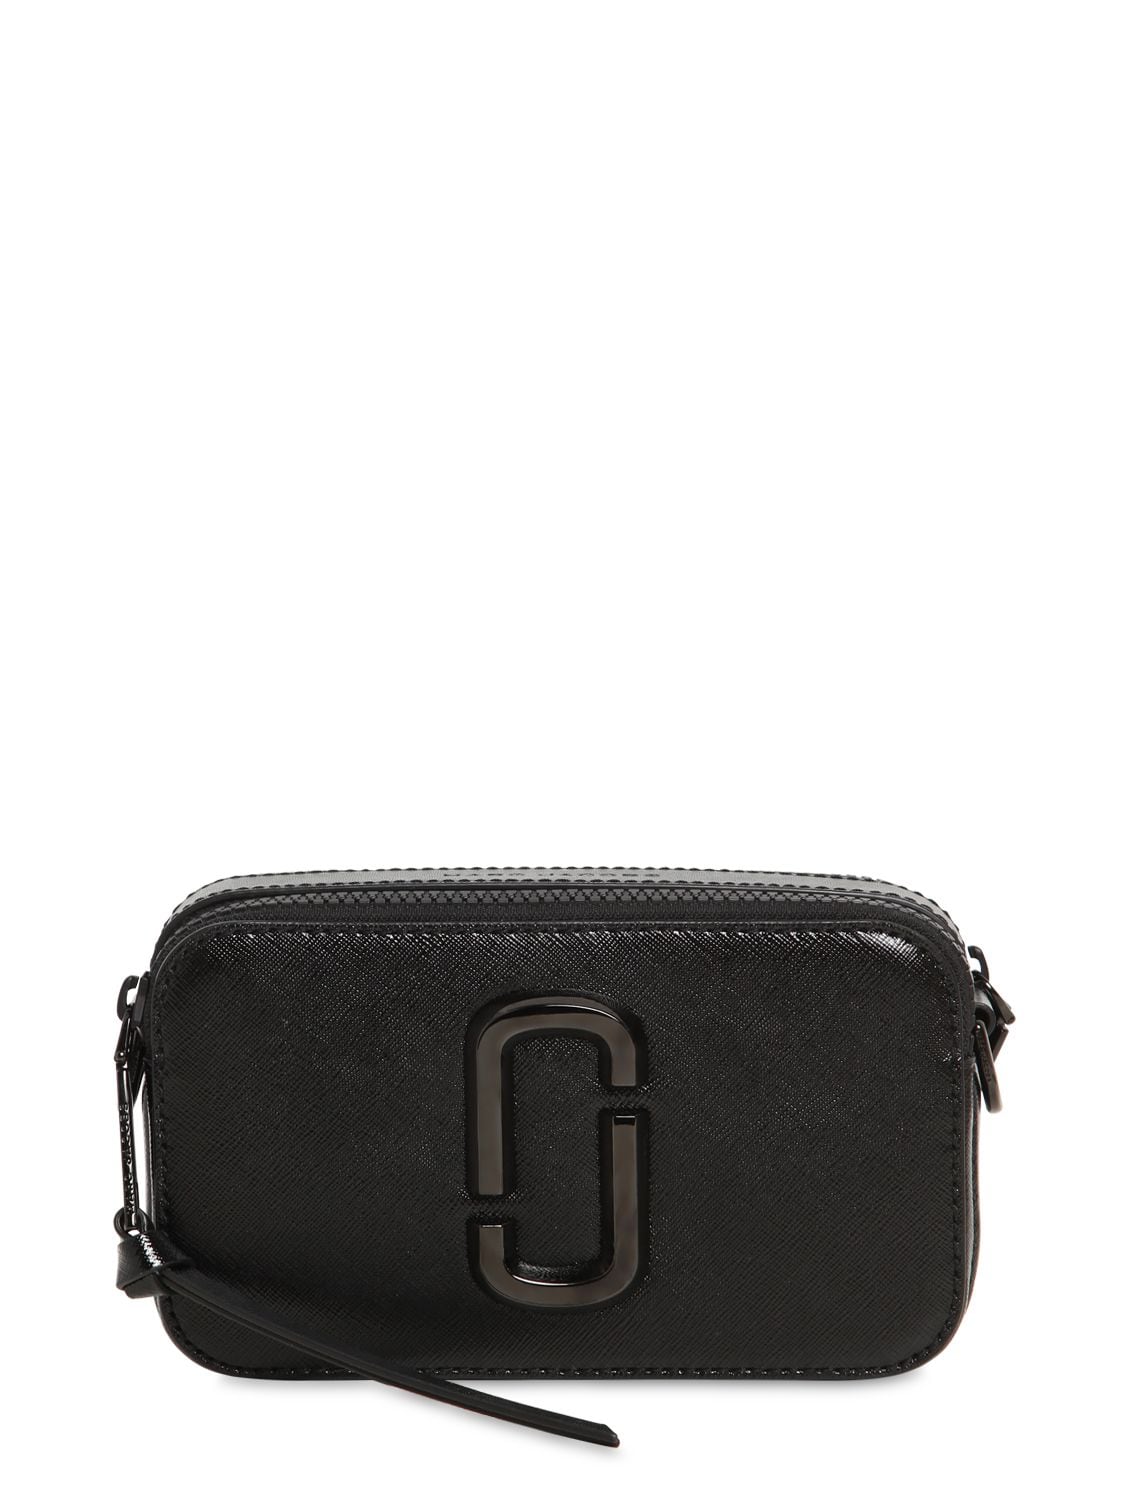 Marc Jacobs Black 'The Snapshot' DTM Shoulder Bag